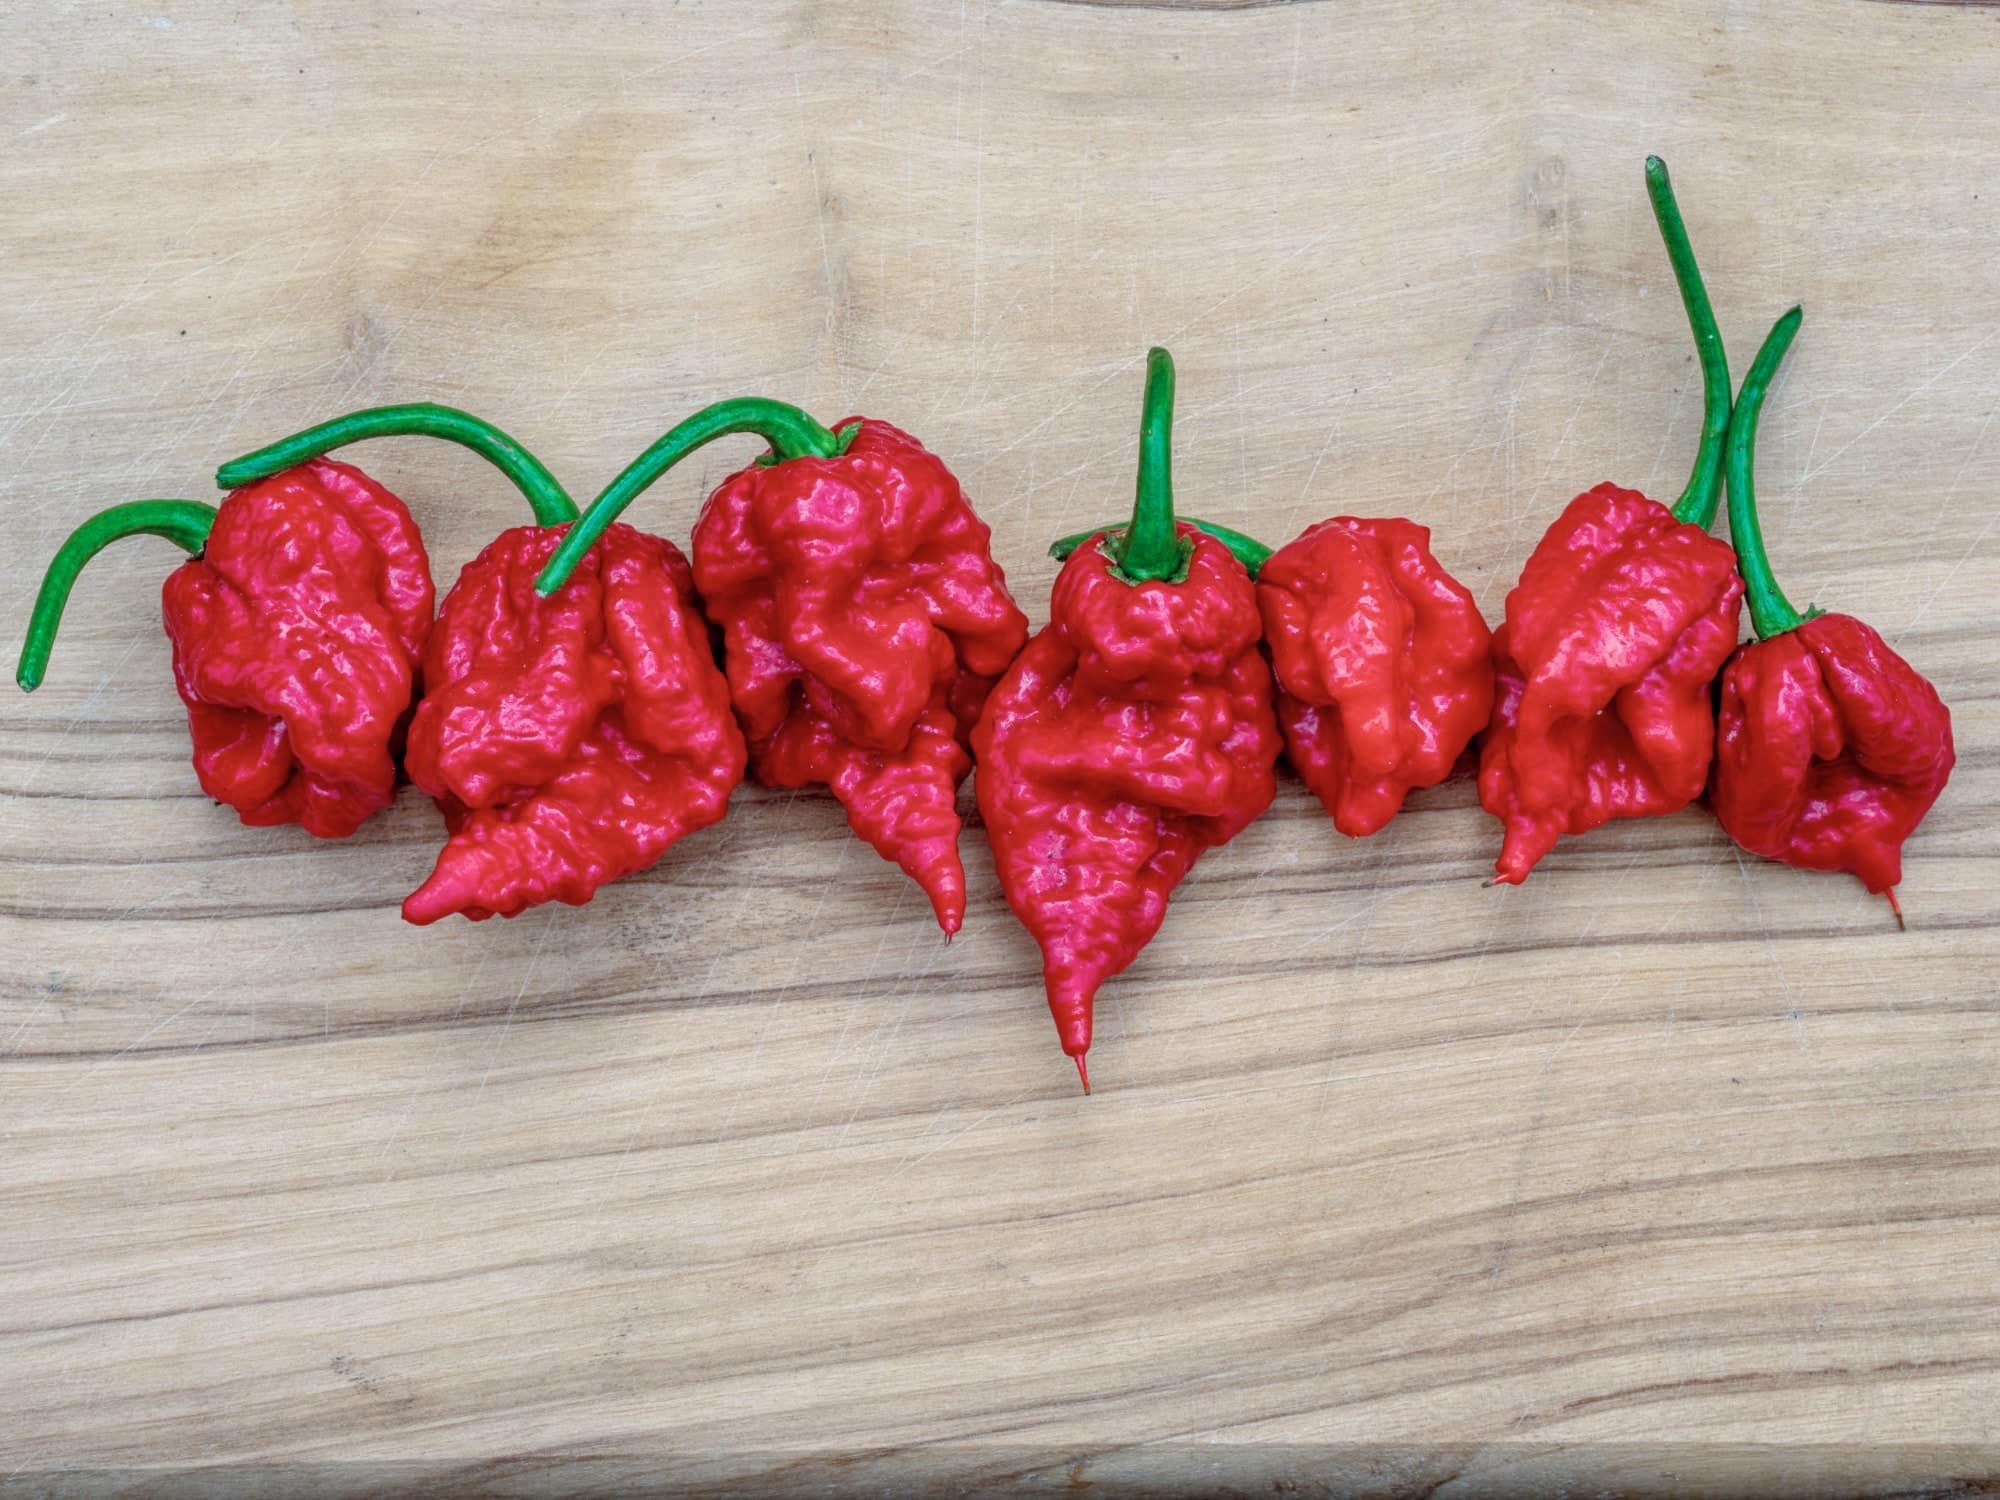 Carolina Reaper hot chili pepper